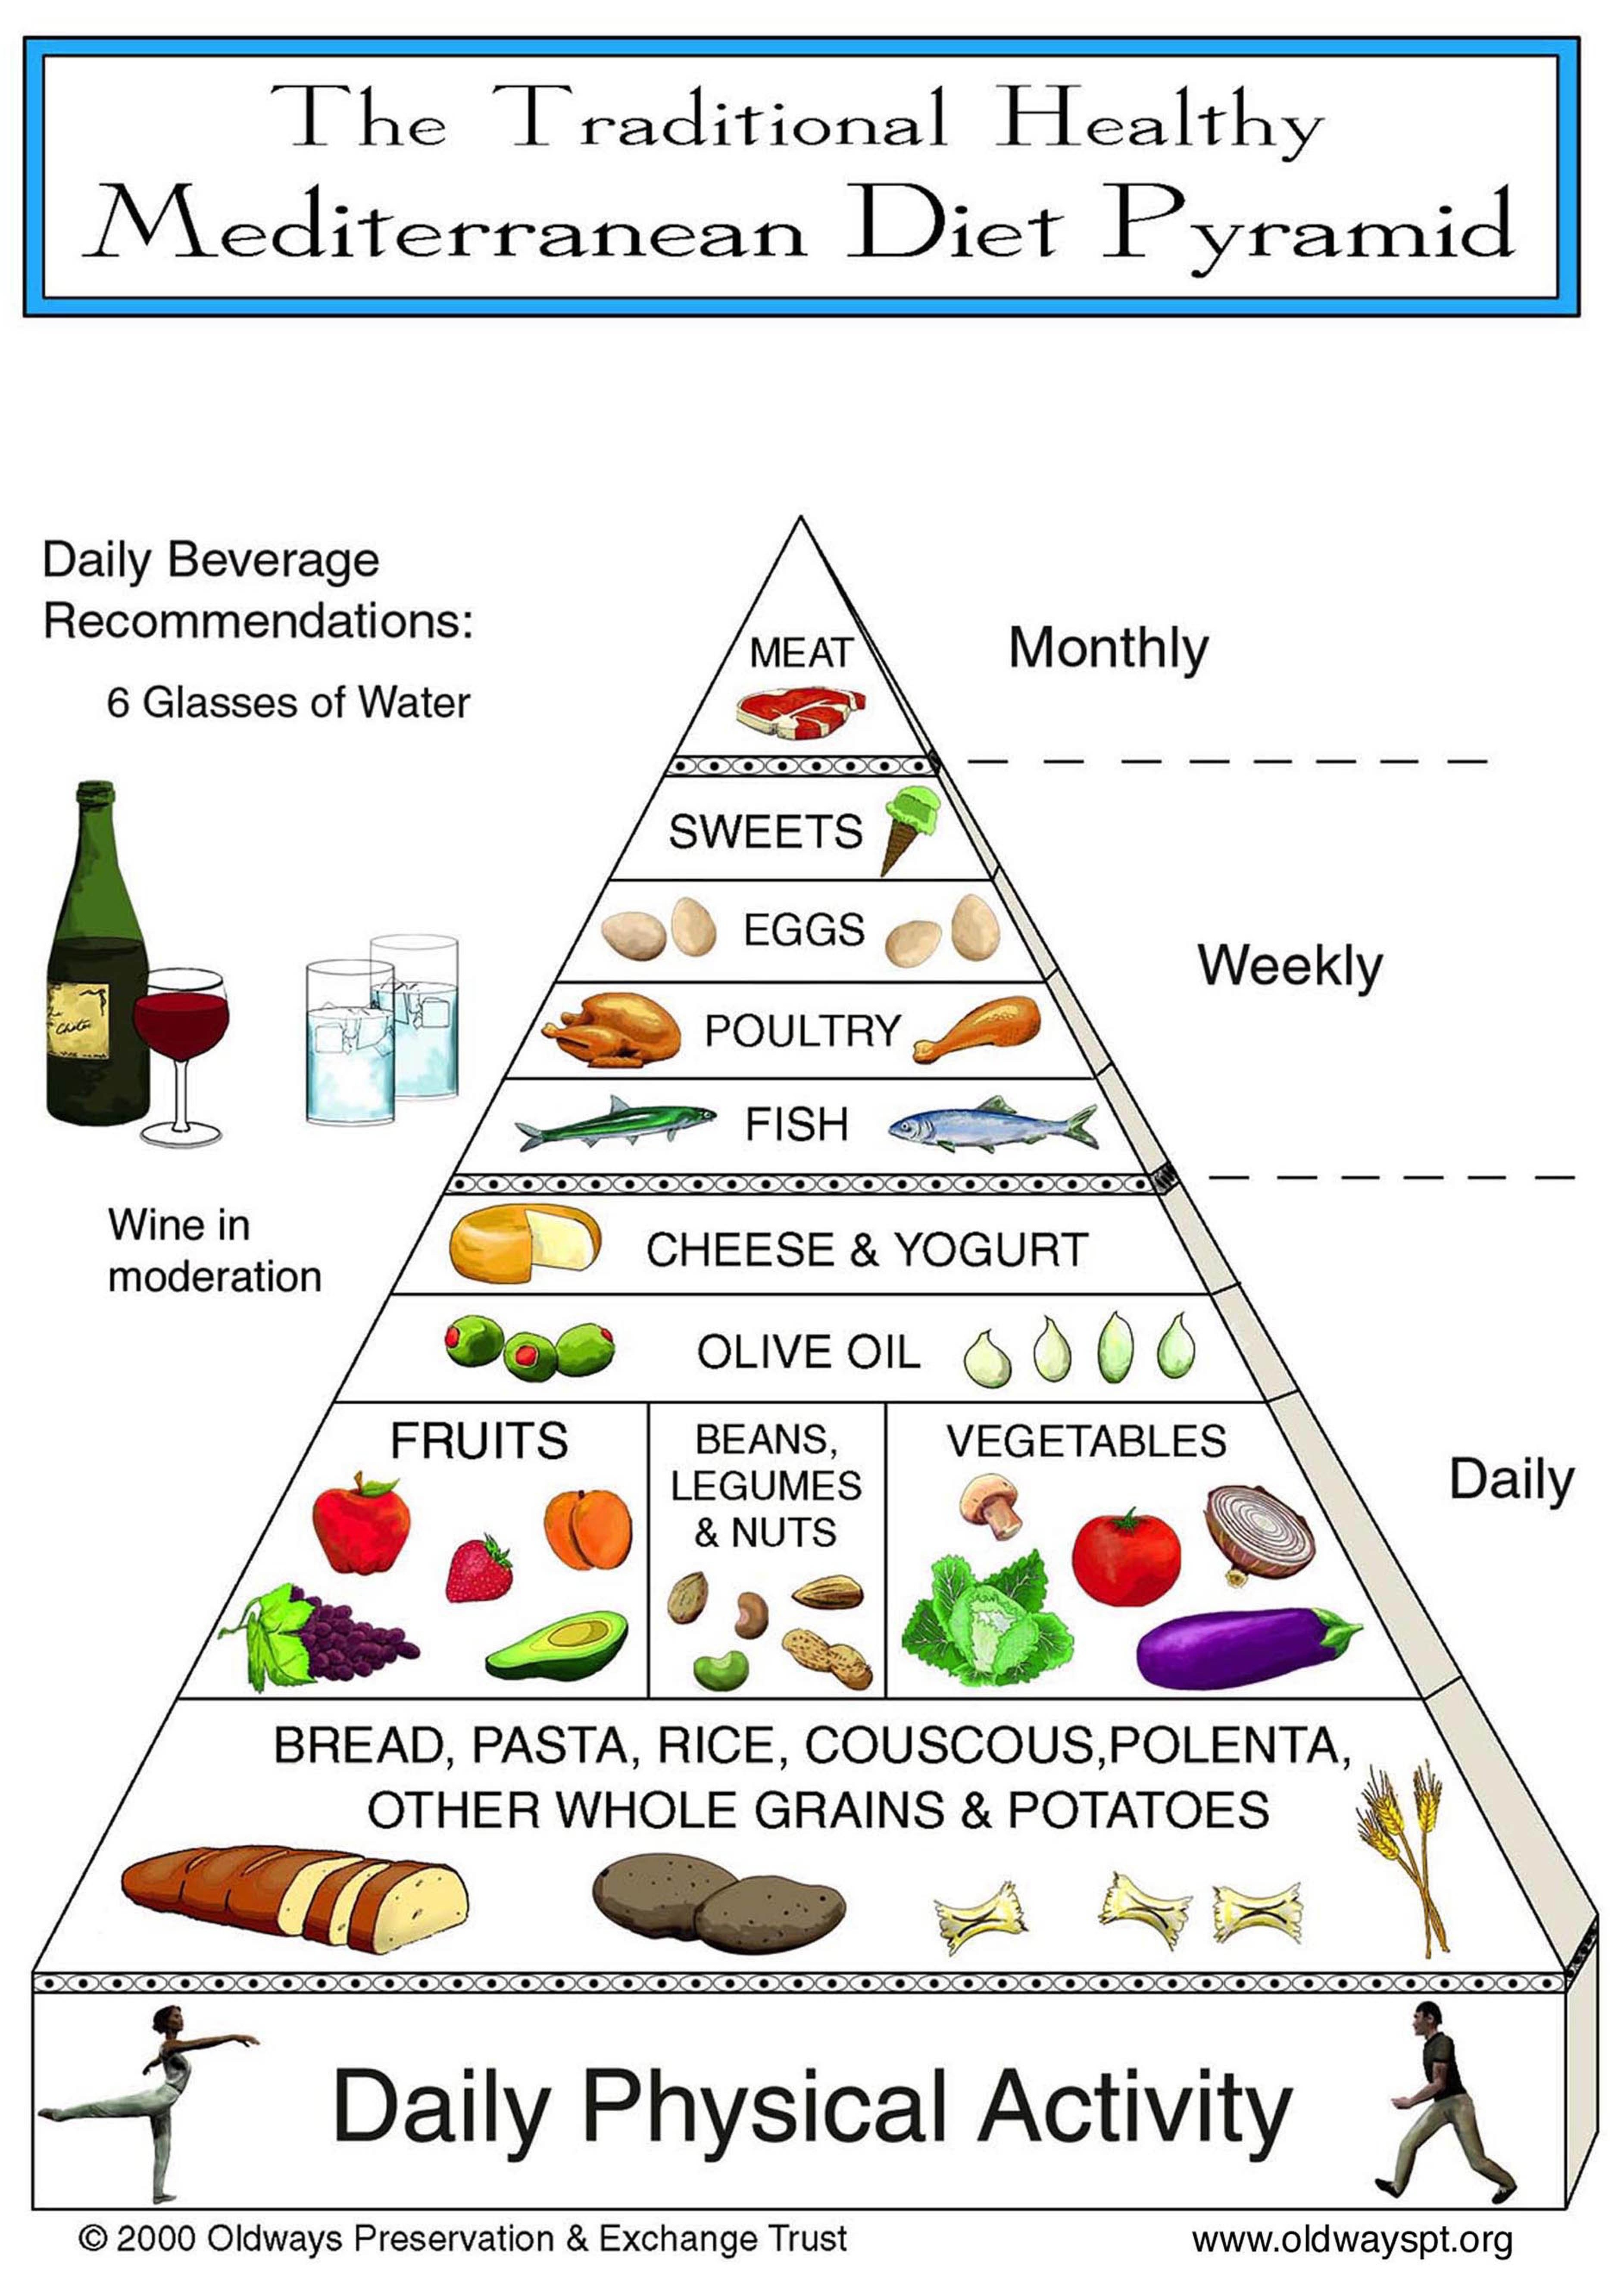 This is the original Oldways Preservation Mediterranean Diet Pyramid